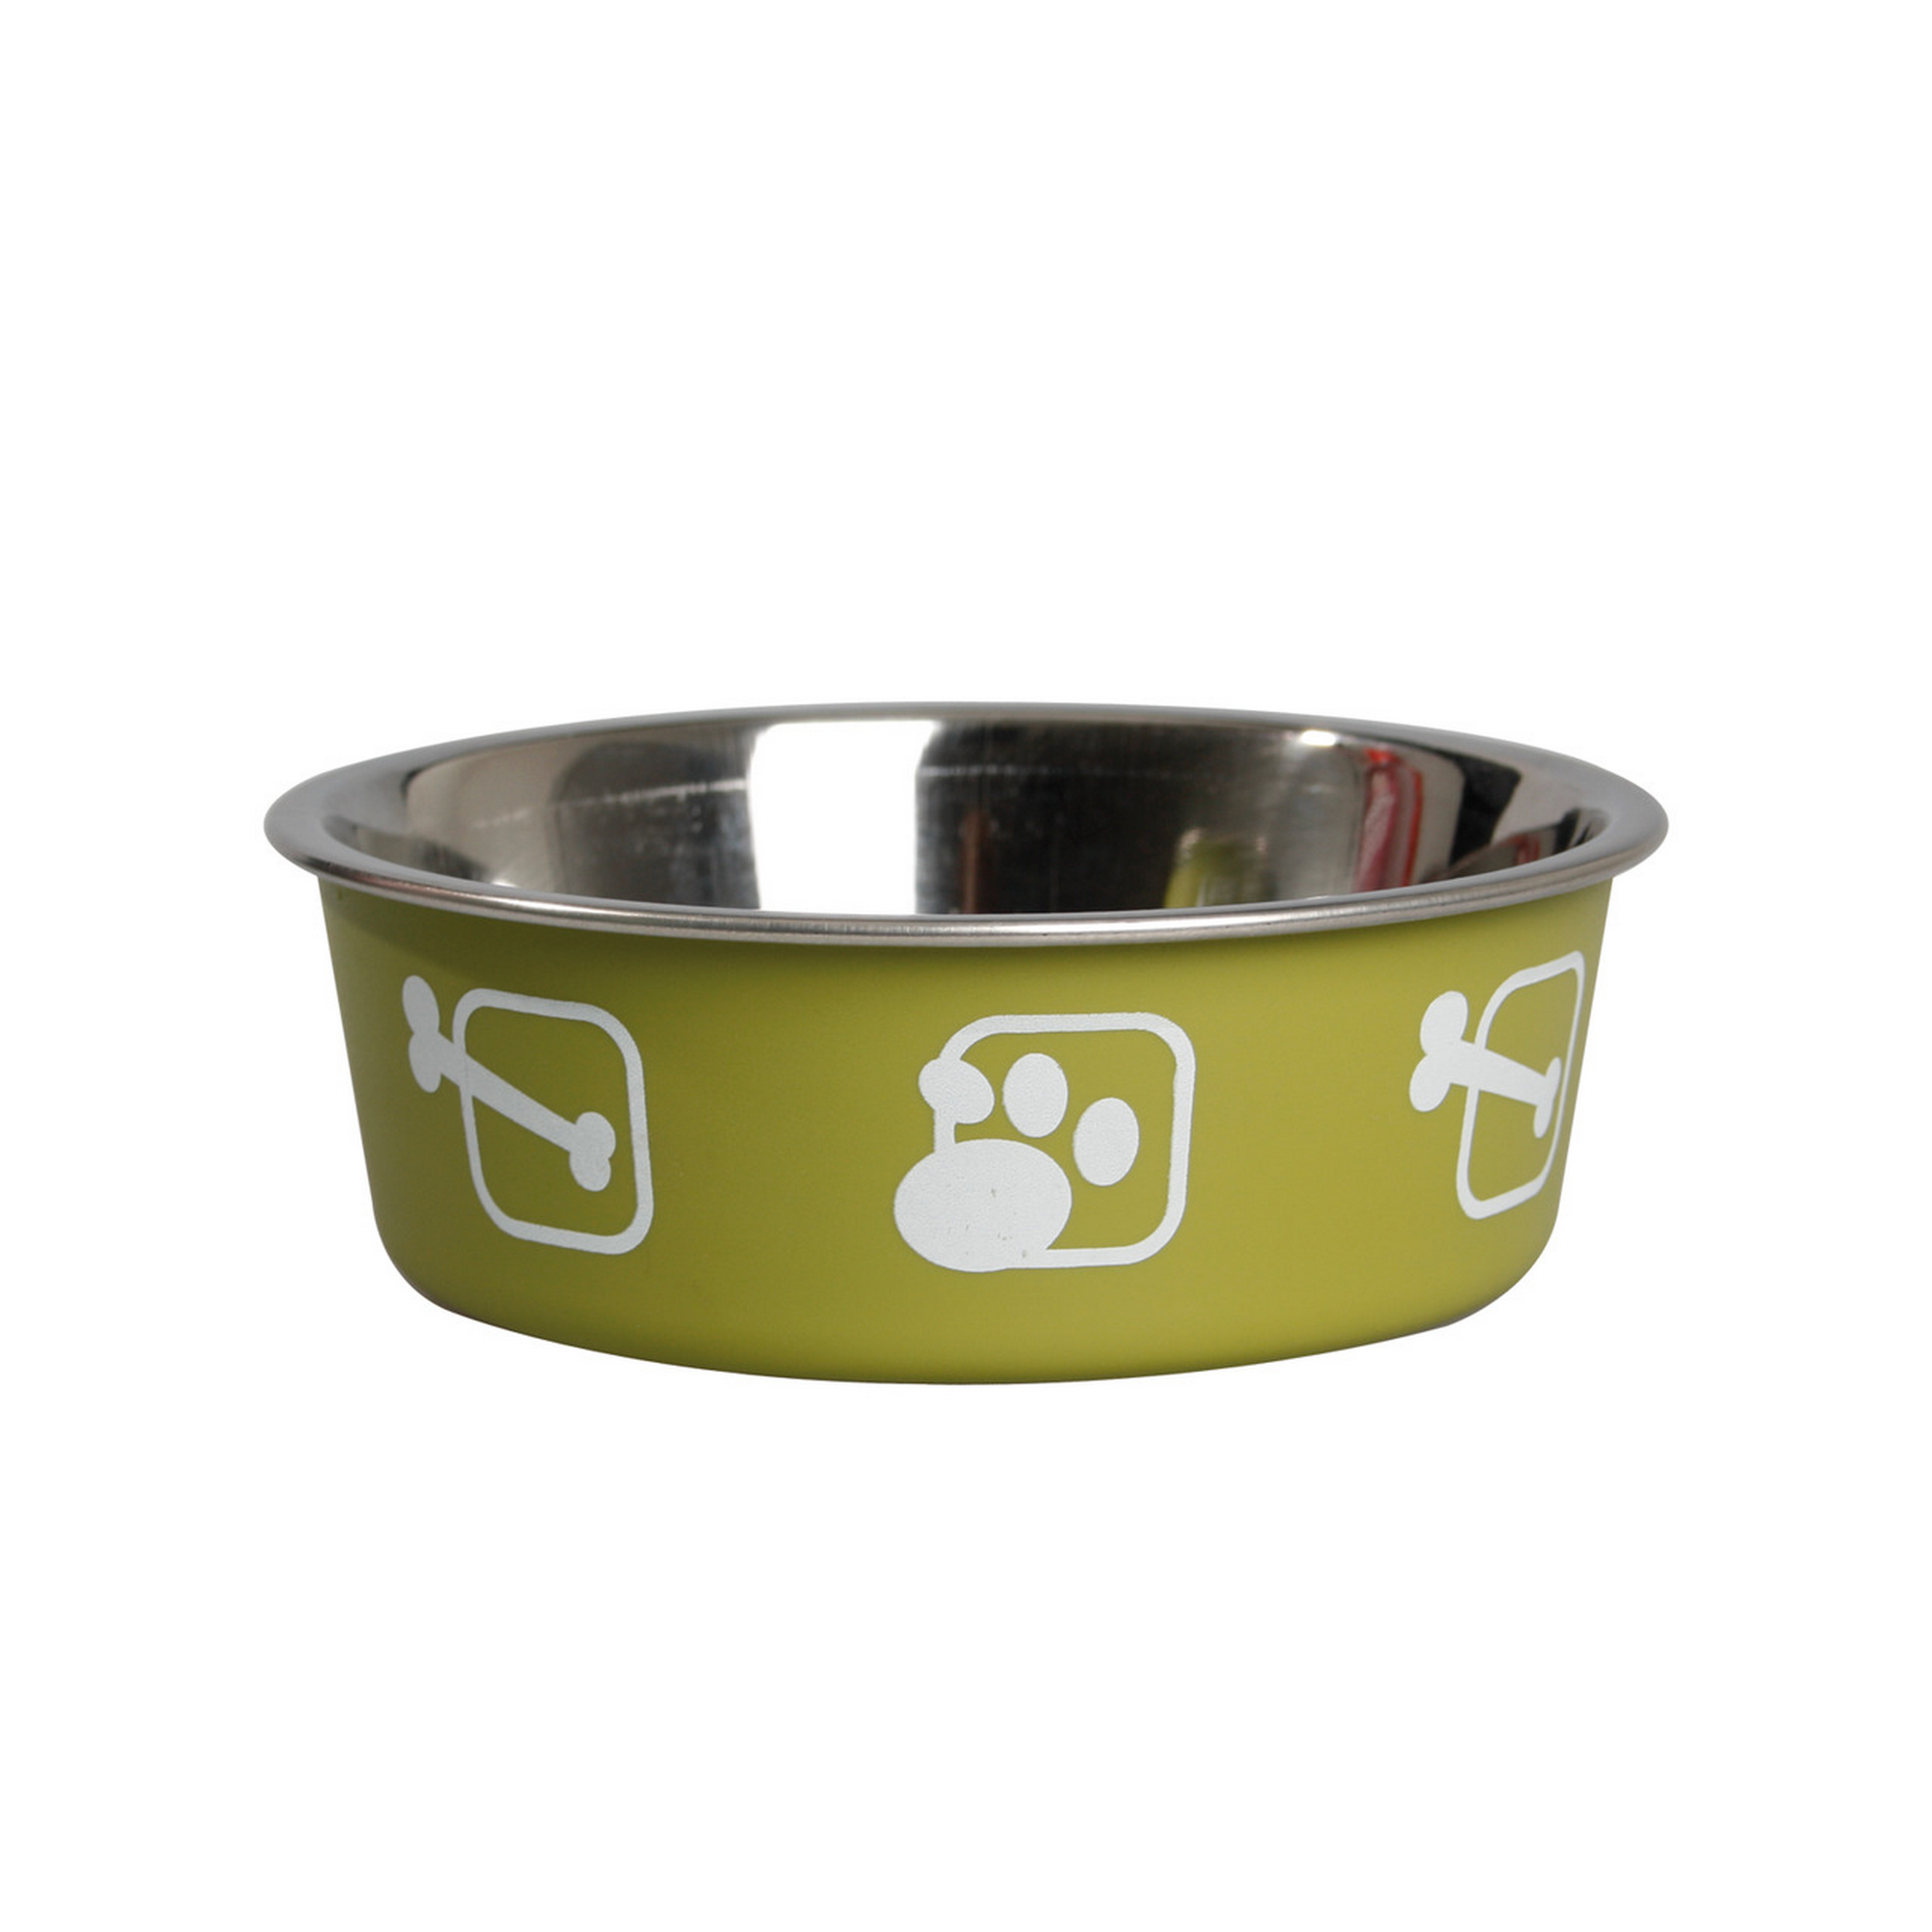 Hundenapf 'Kena' Edelstahl grün mit Knochen- und Pfotenmotiv Ø 12 cm + product picture